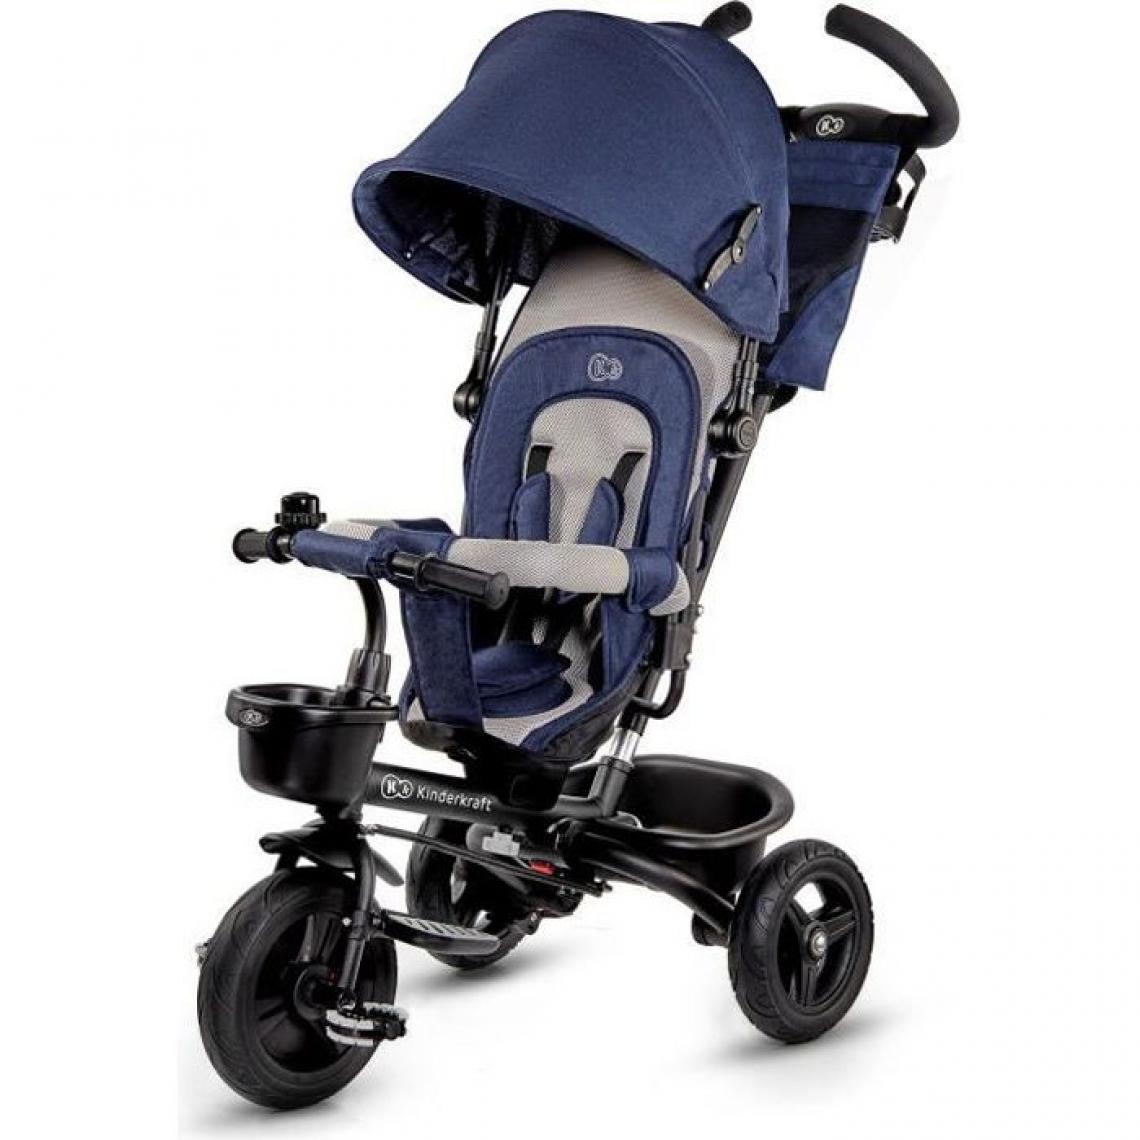 Kinderkraft - KINDERKRAFT Tricycle AVEO Bleu - 3 roues - Evolutif - Pliable - Tricycle